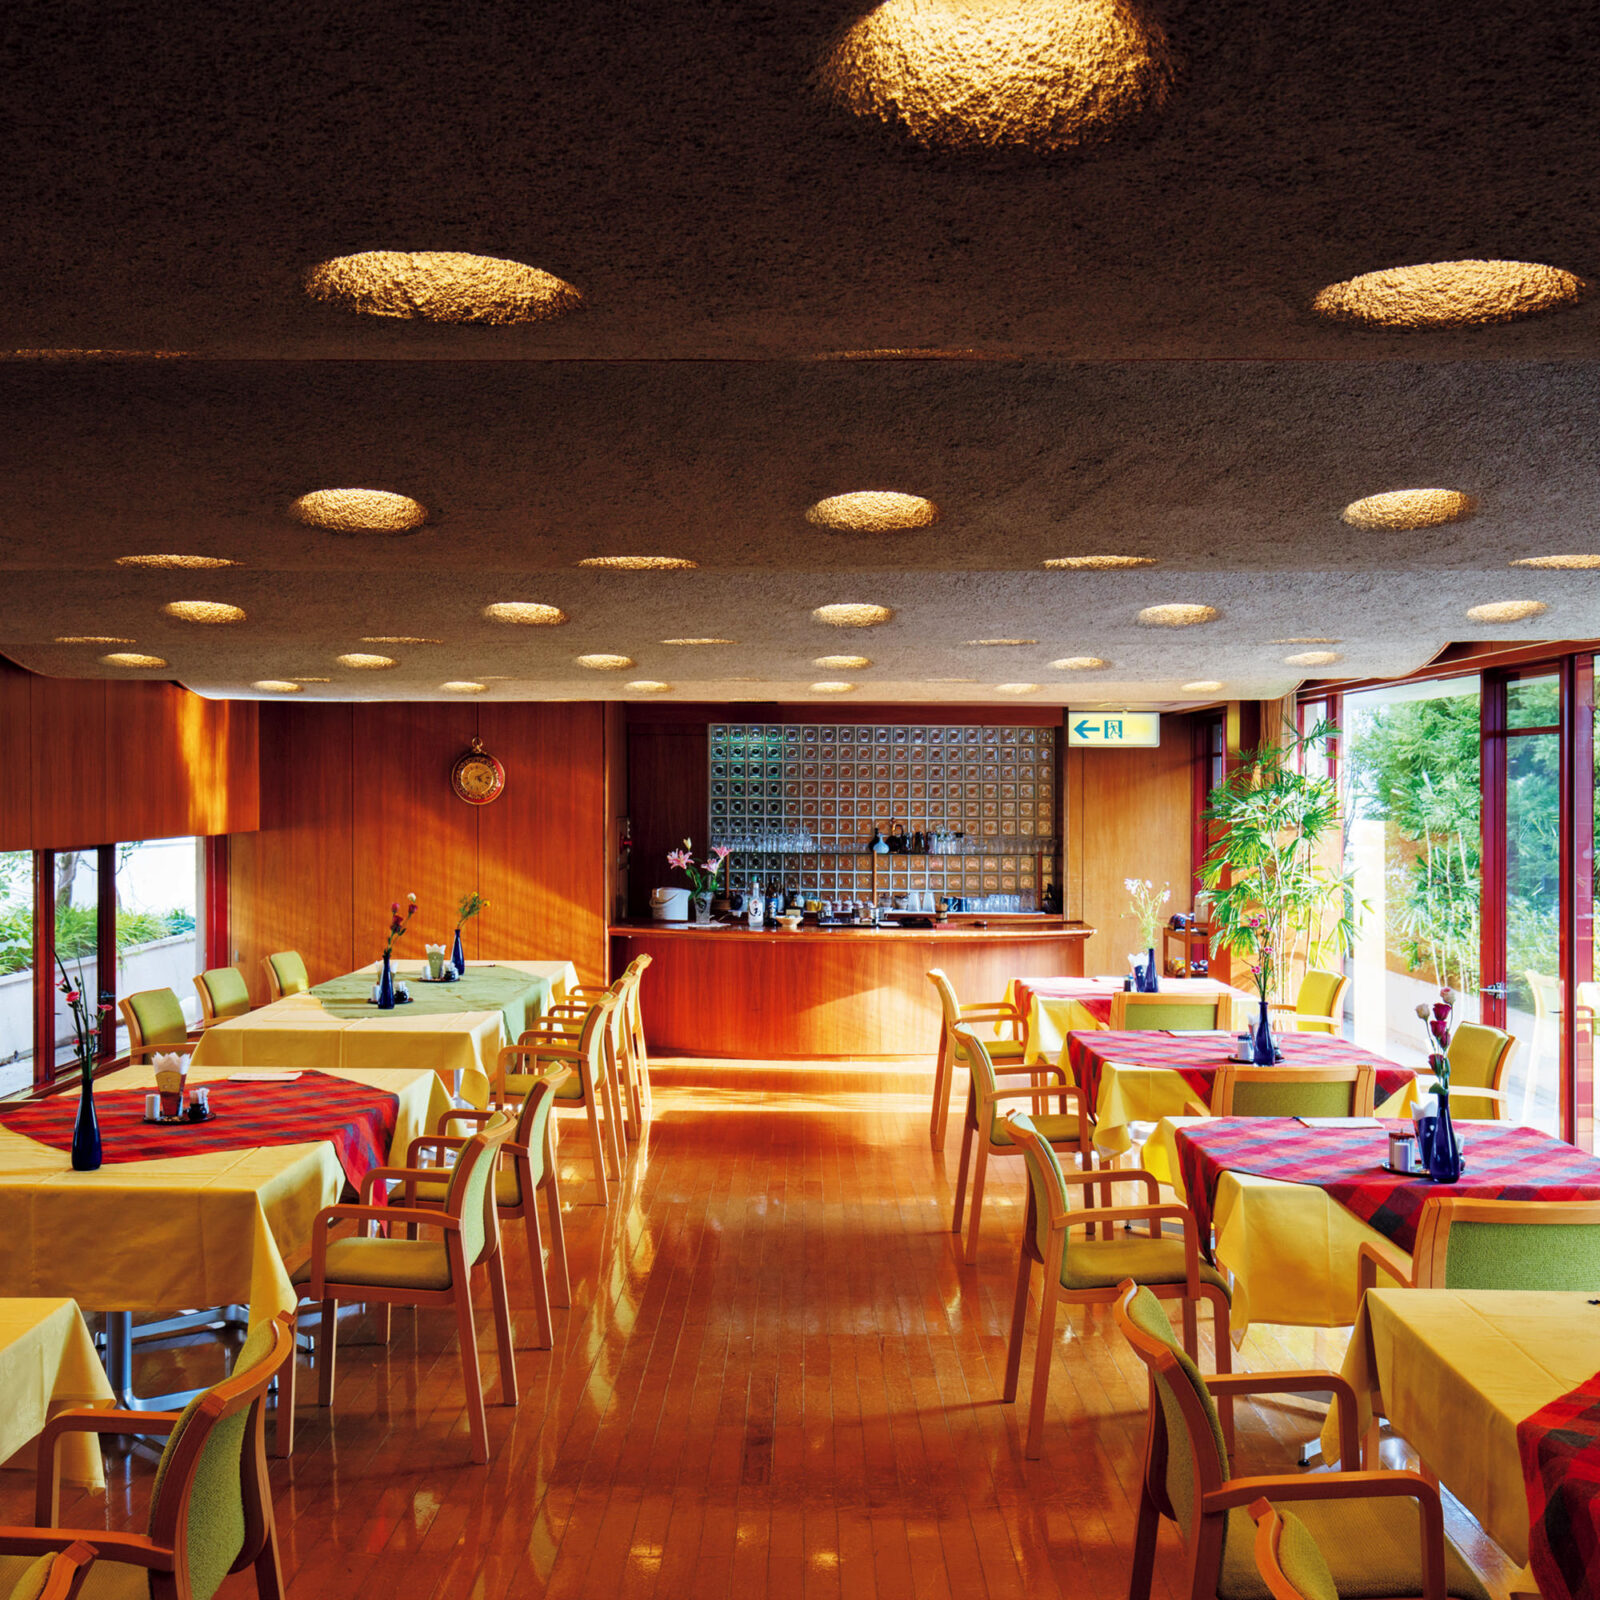 波打つ天井が有機的な印象のレストラン。